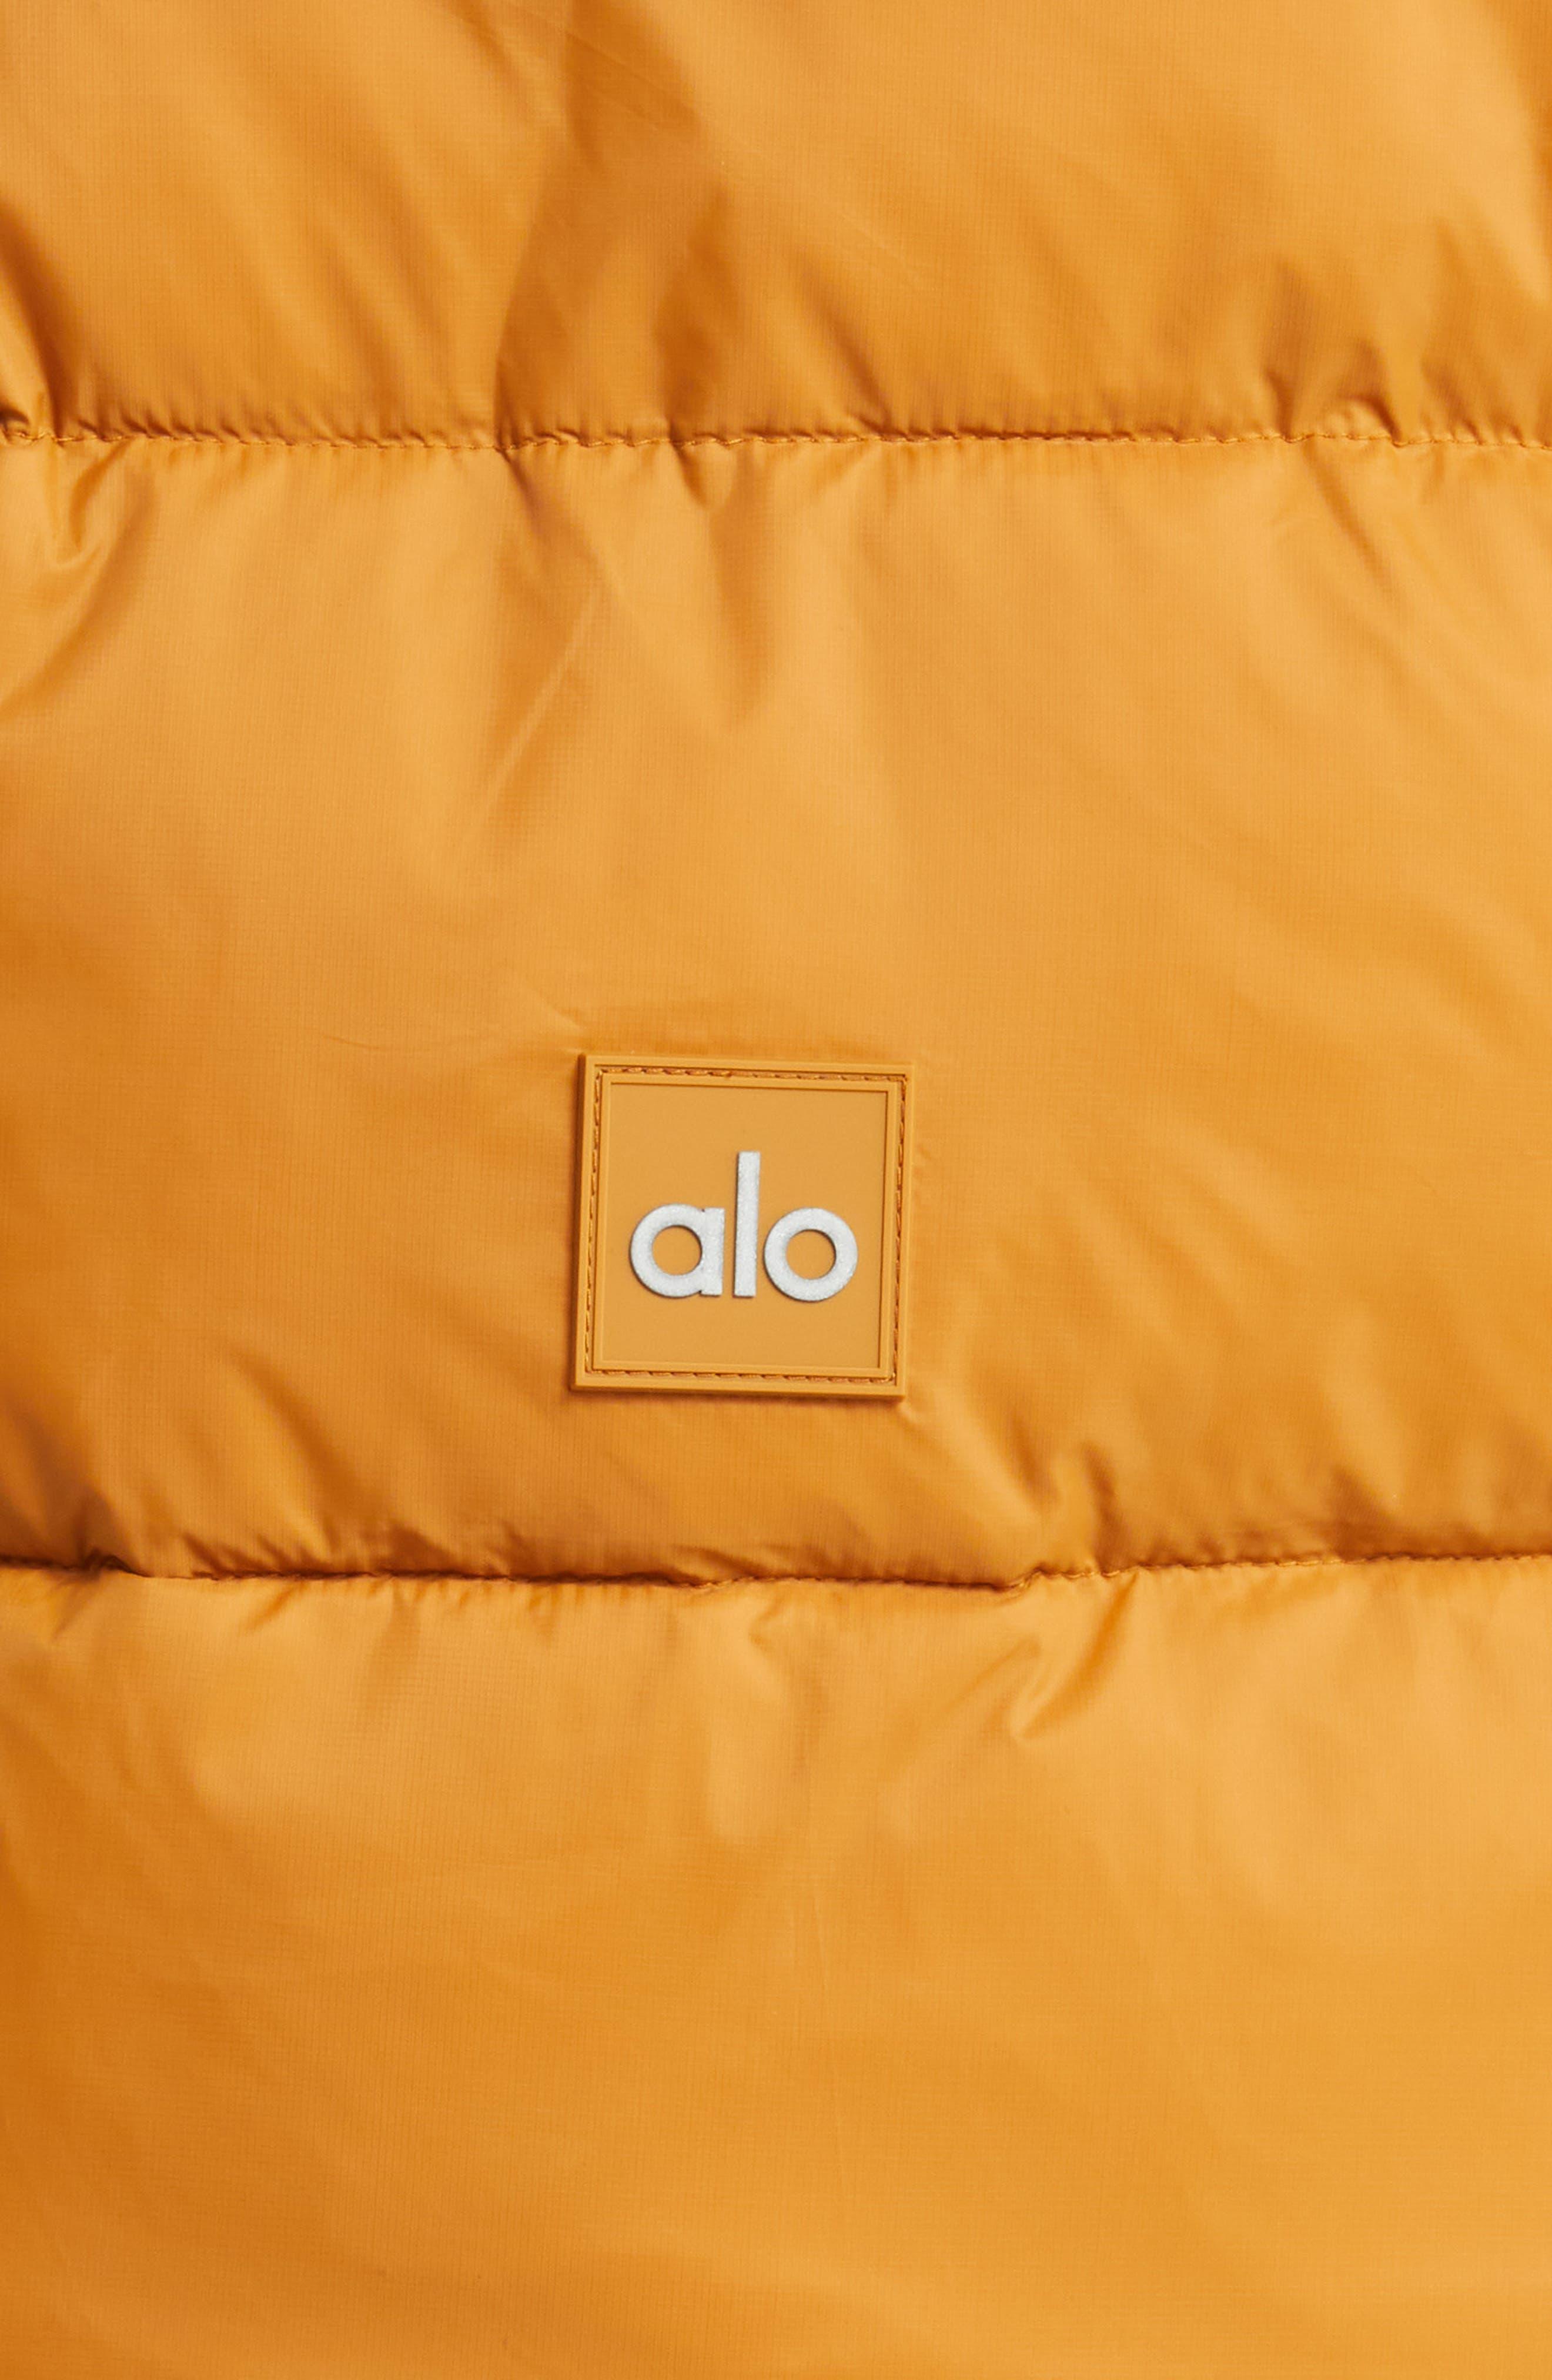 Alo Yoga Gold Rush Hooded Puffer Vest in Orange